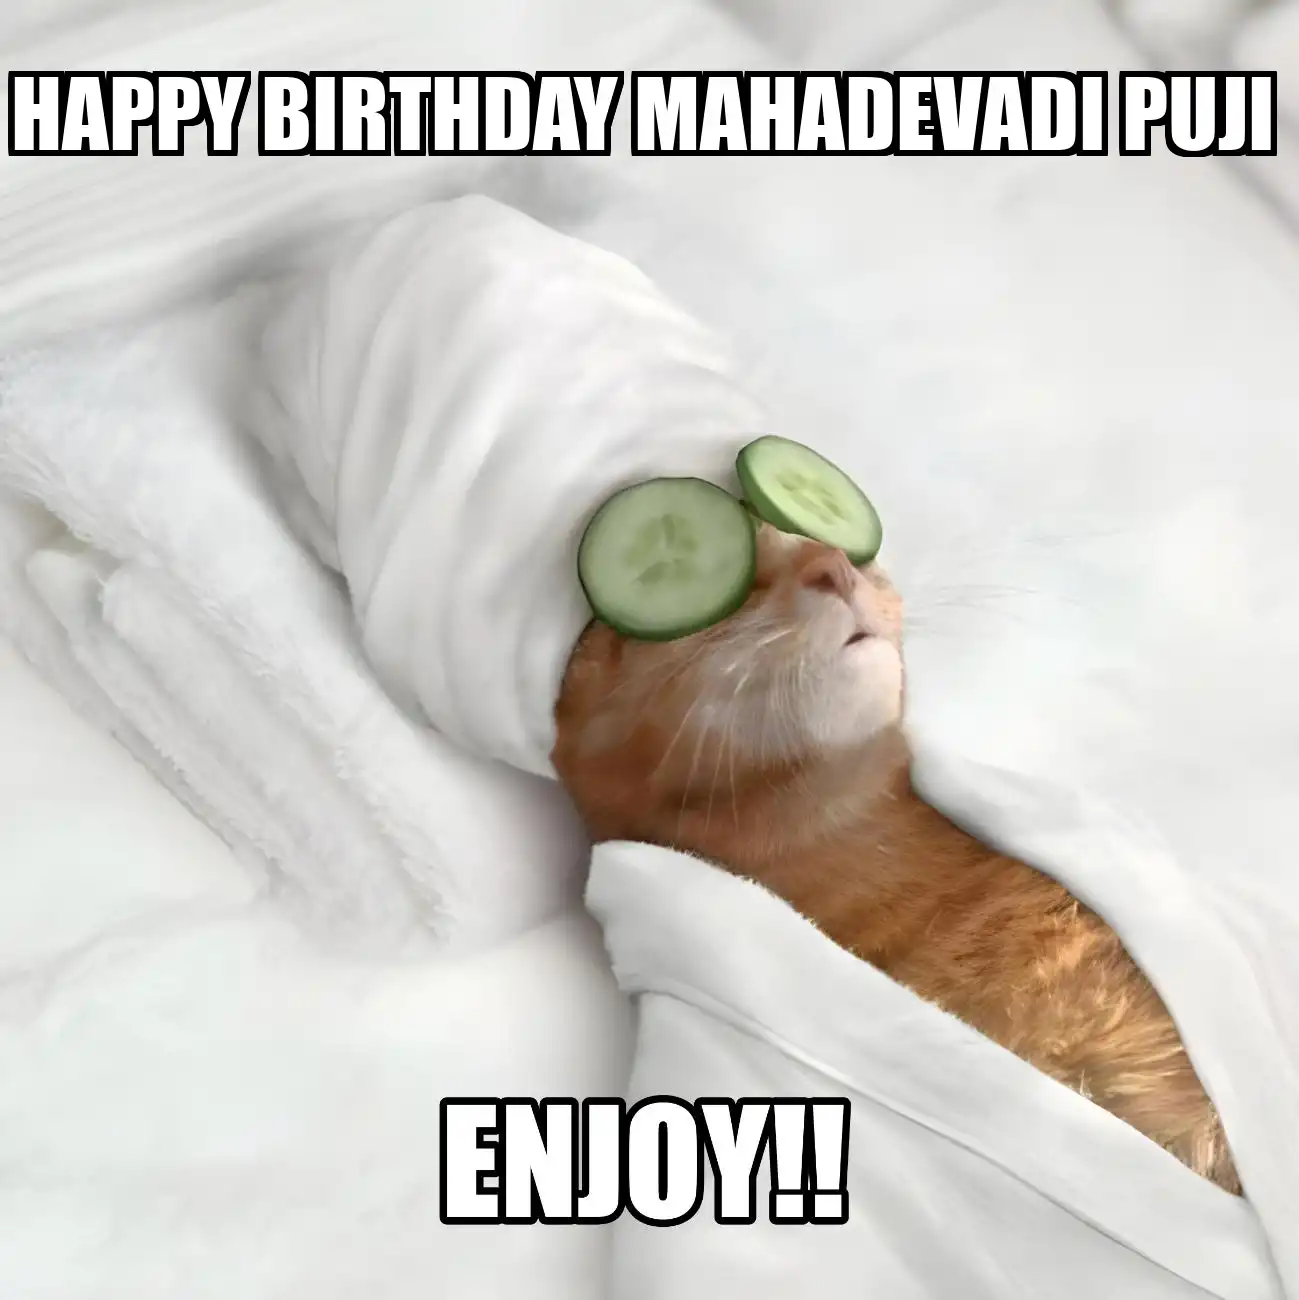 Happy Birthday Mahadevadi Puji Enjoy Cat Meme